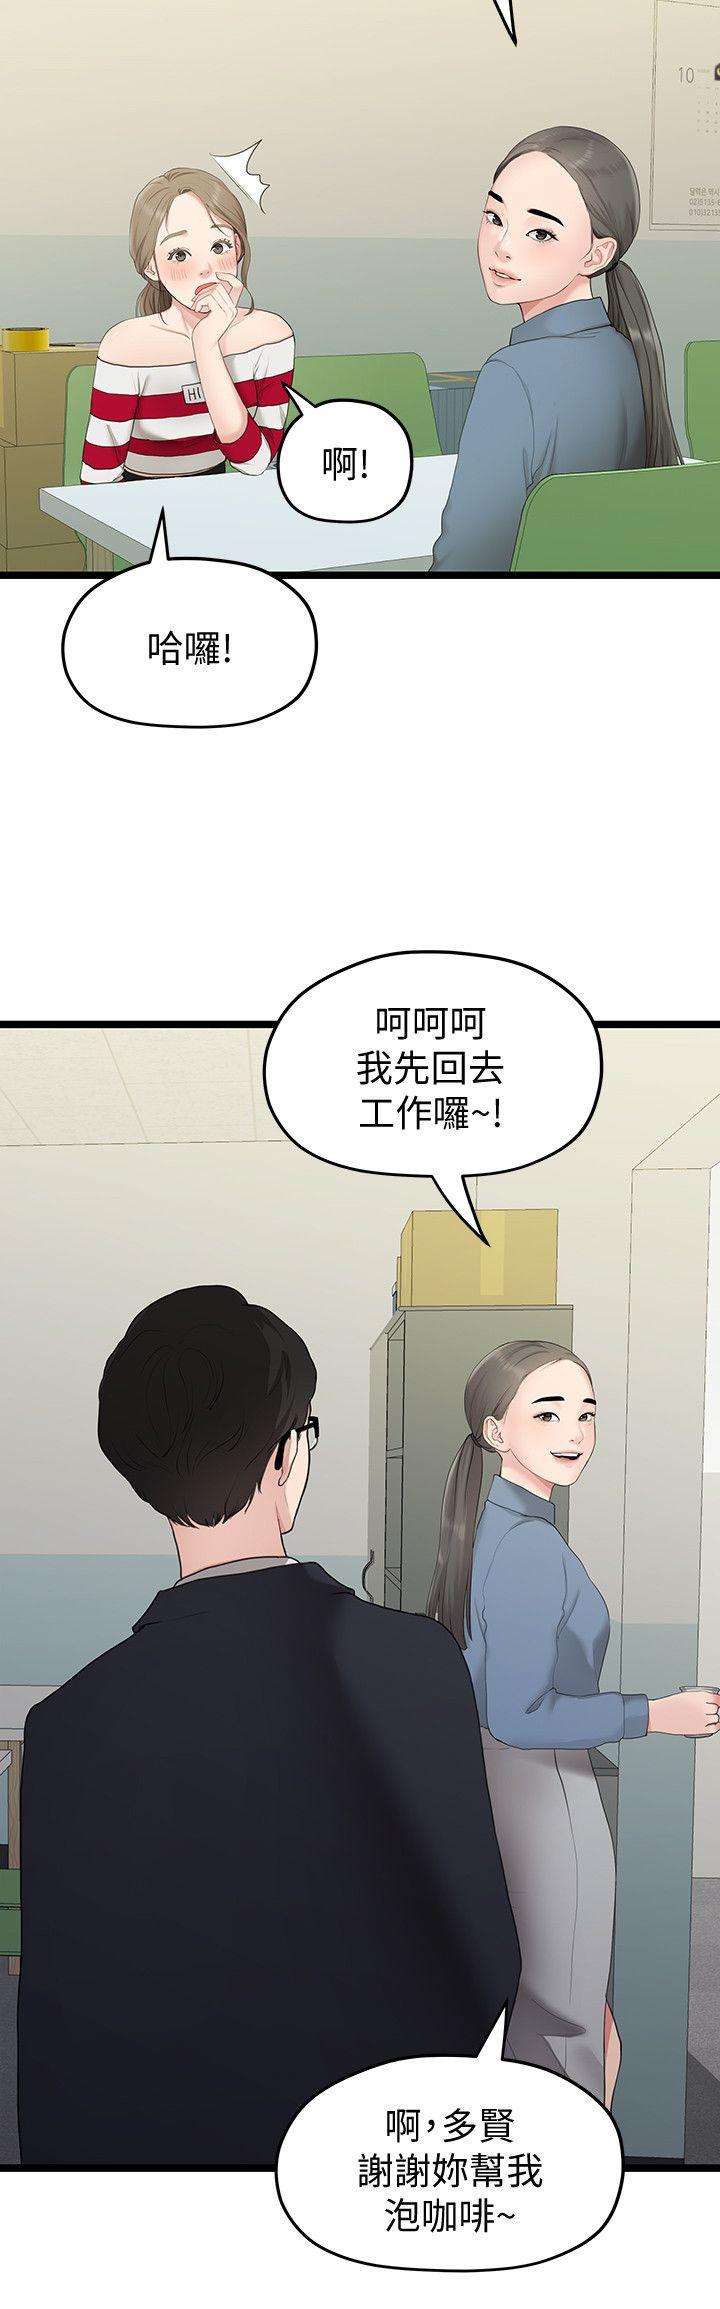 韩国污漫画 我們的非常關系 第33话-无法继续交往的理由 14